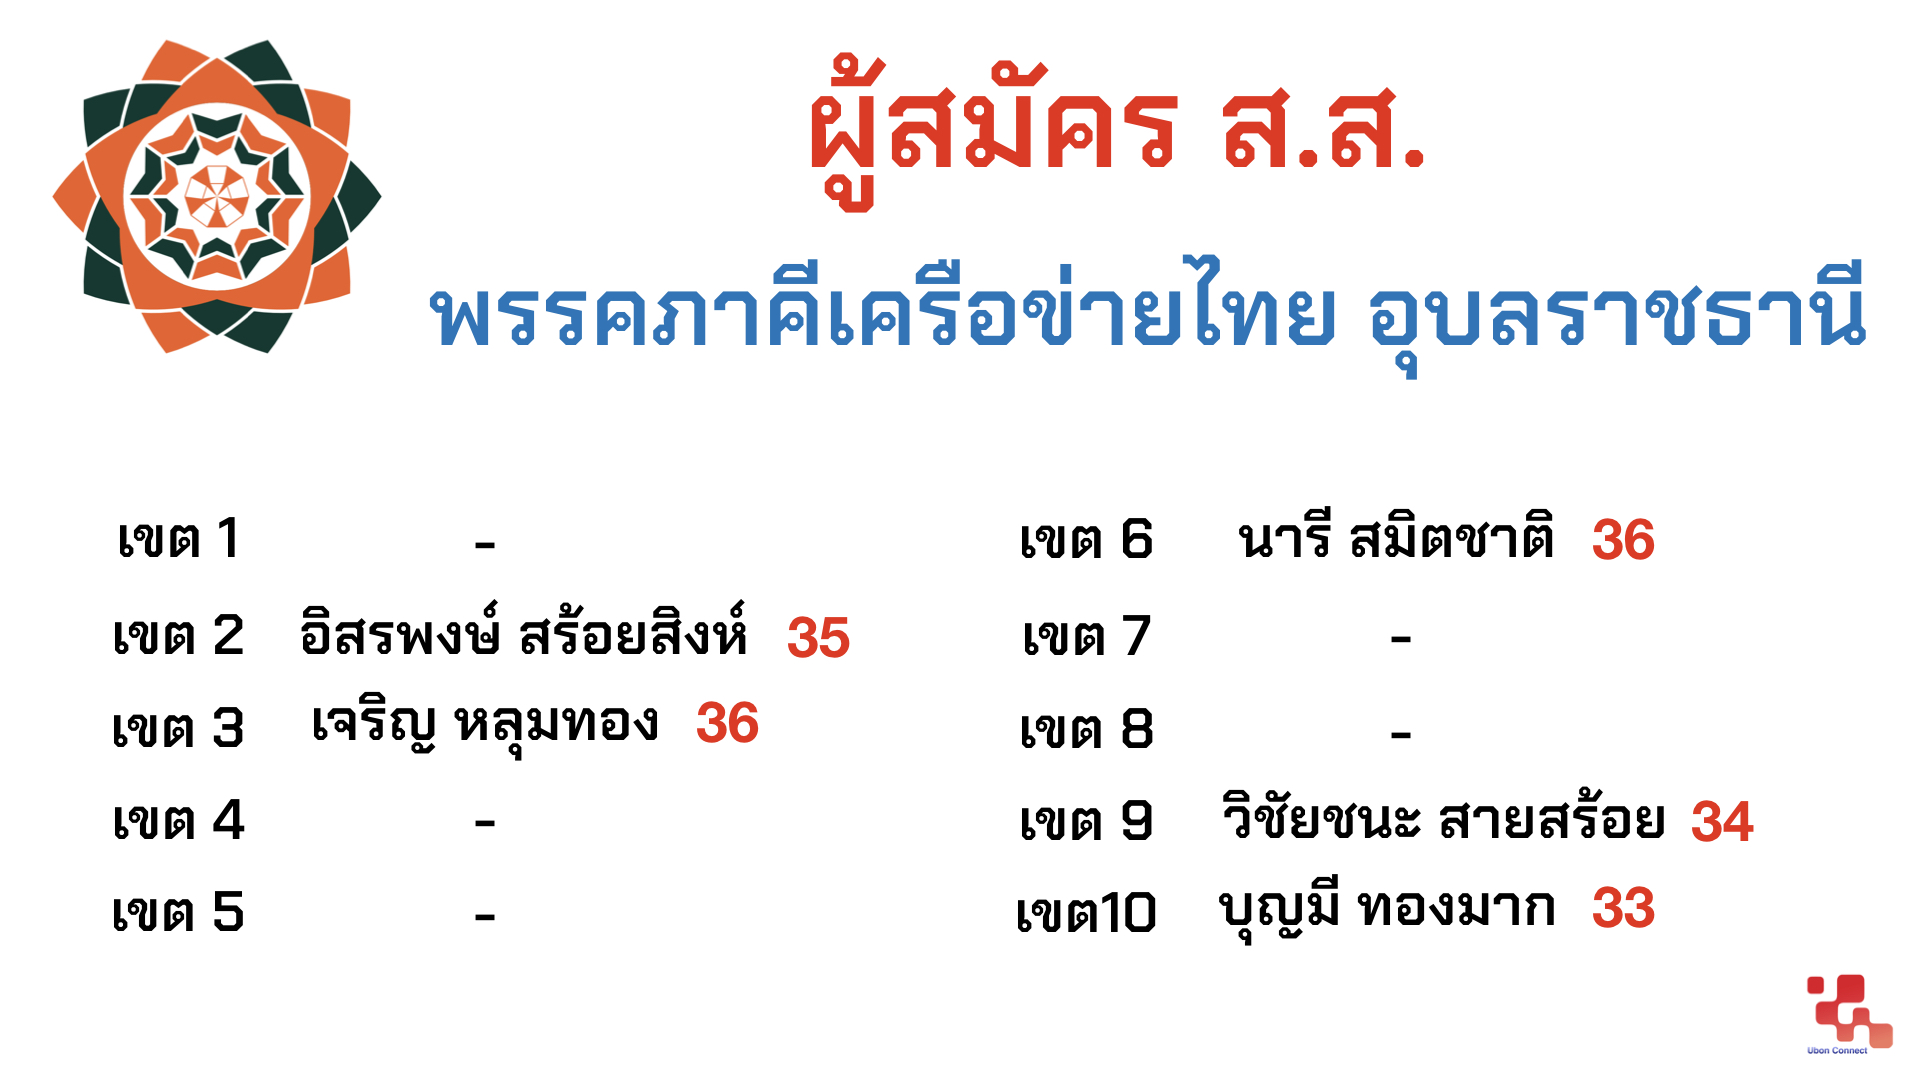 ภาคีเครือข่ายไทย